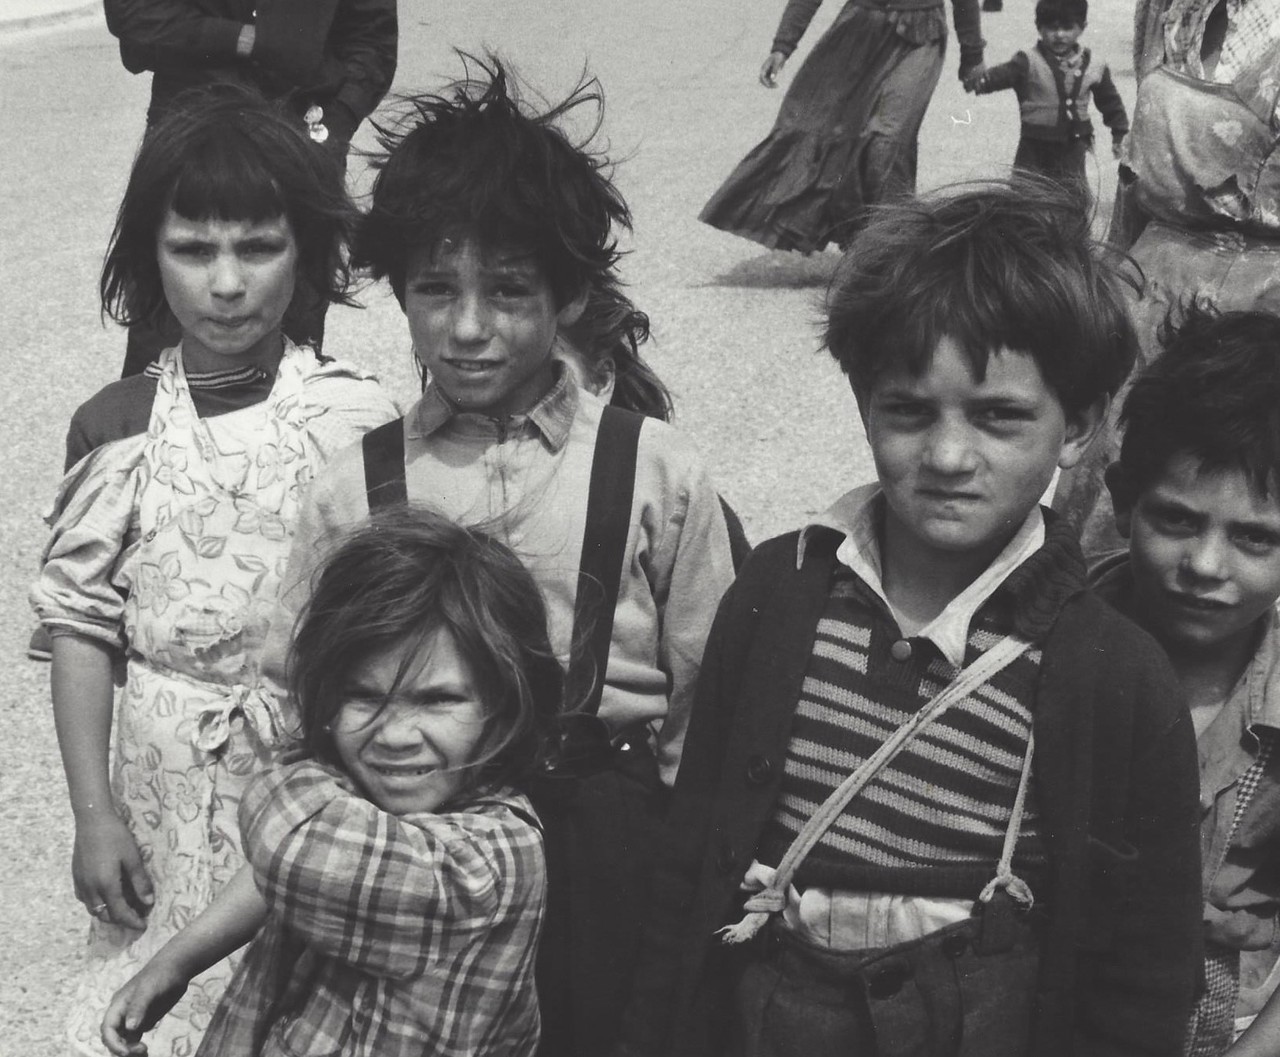 Цыганская детвора, Сент-Мари-де-ла-Мер, Франция, 1950-е. Фотограф Кис Шерер